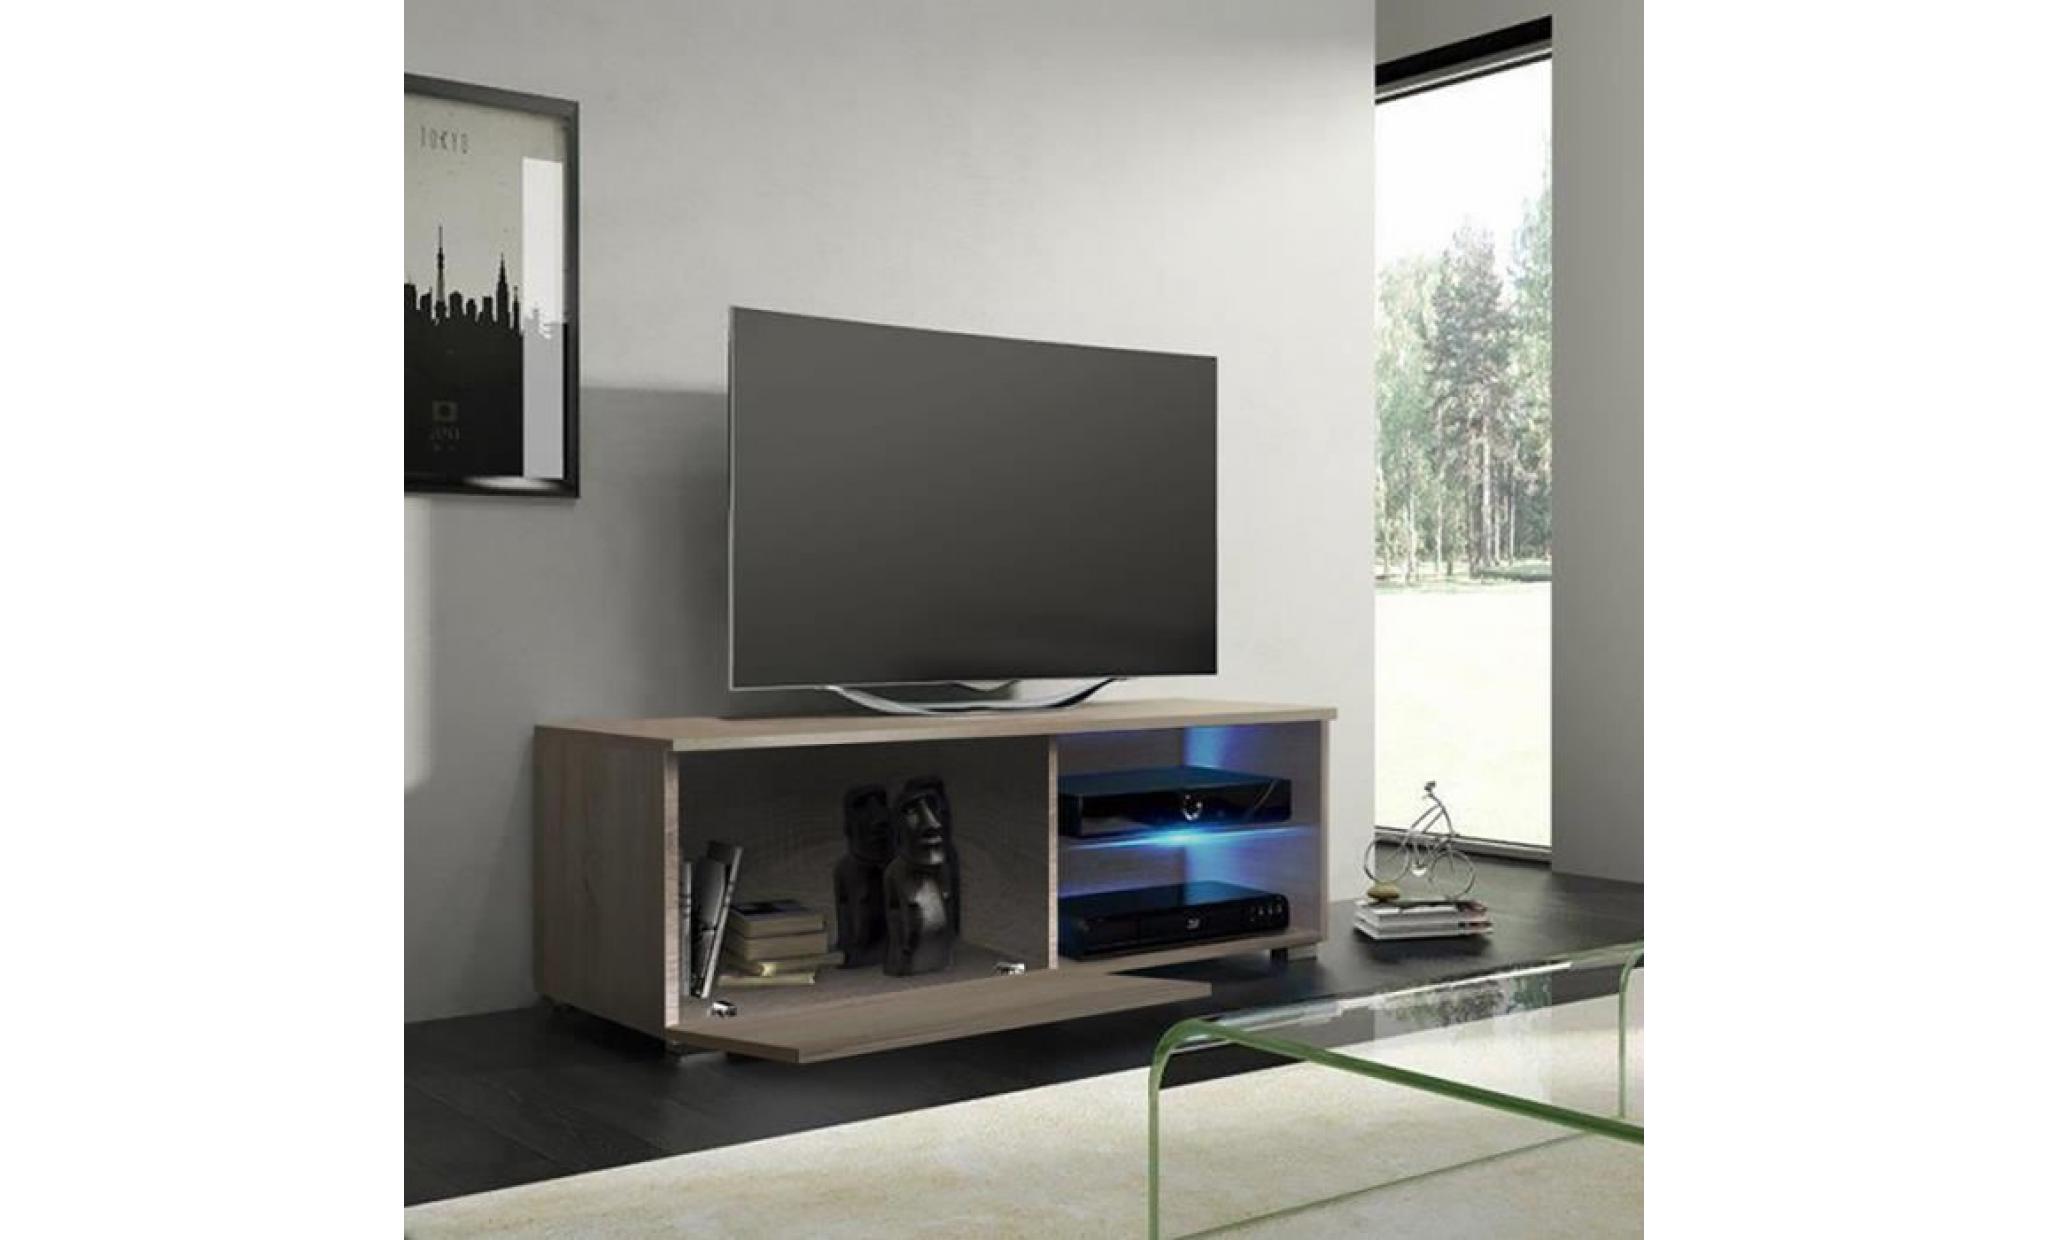 meuble tv / meuble salon   tenus single   100 cm   effet chêne   avec led   2 compartiments ouverts   style classique pas cher